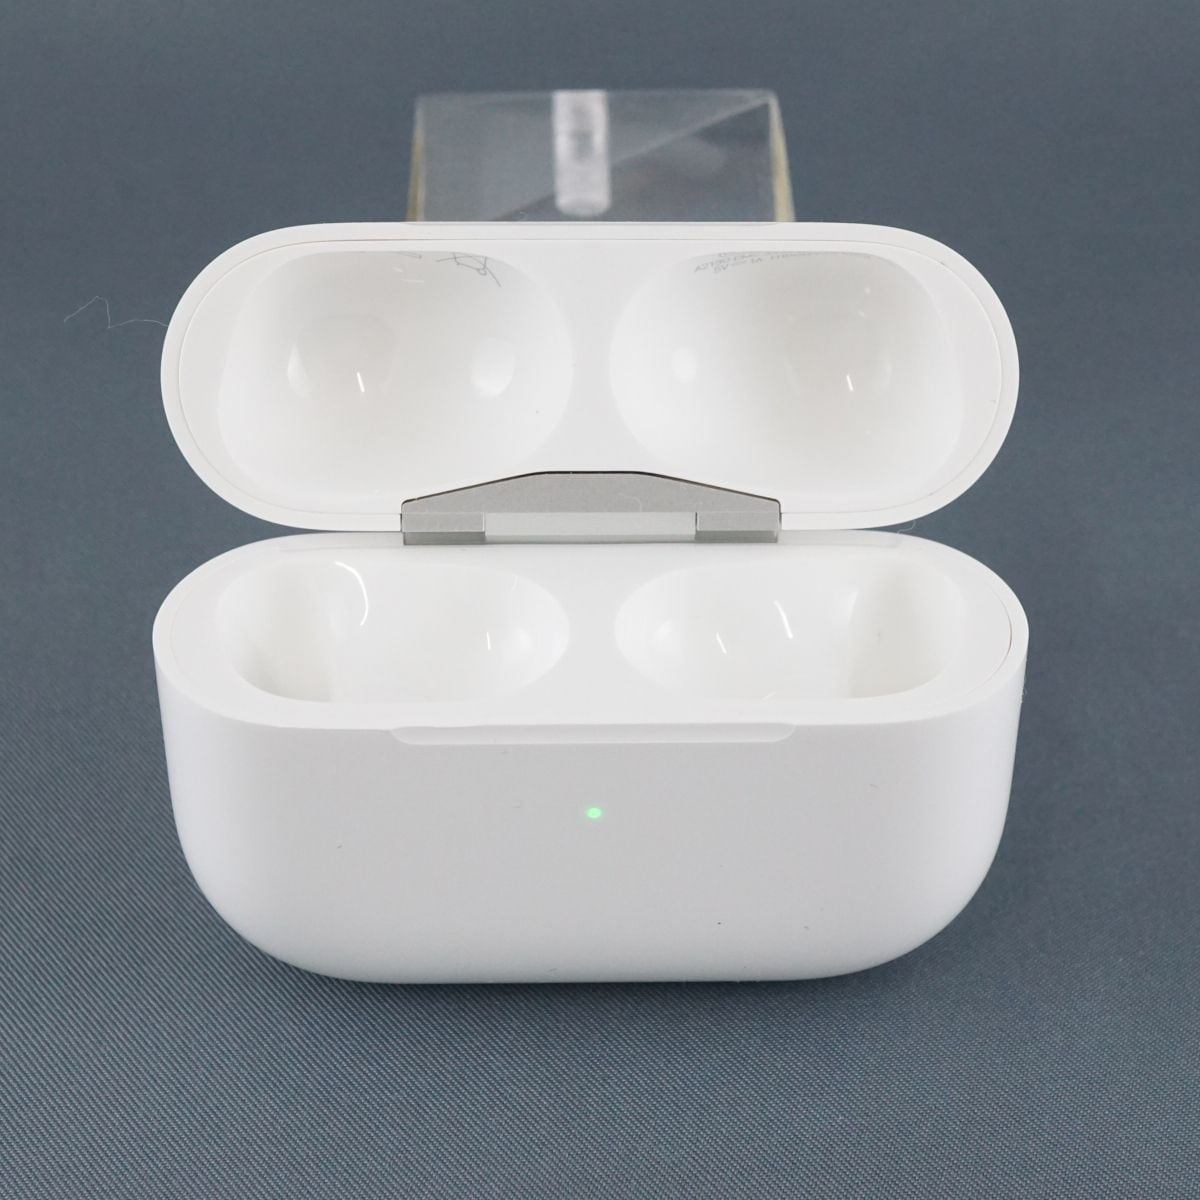 Apple純正 AirPods Pro用 ワイヤレス充電ケースのみ A2190